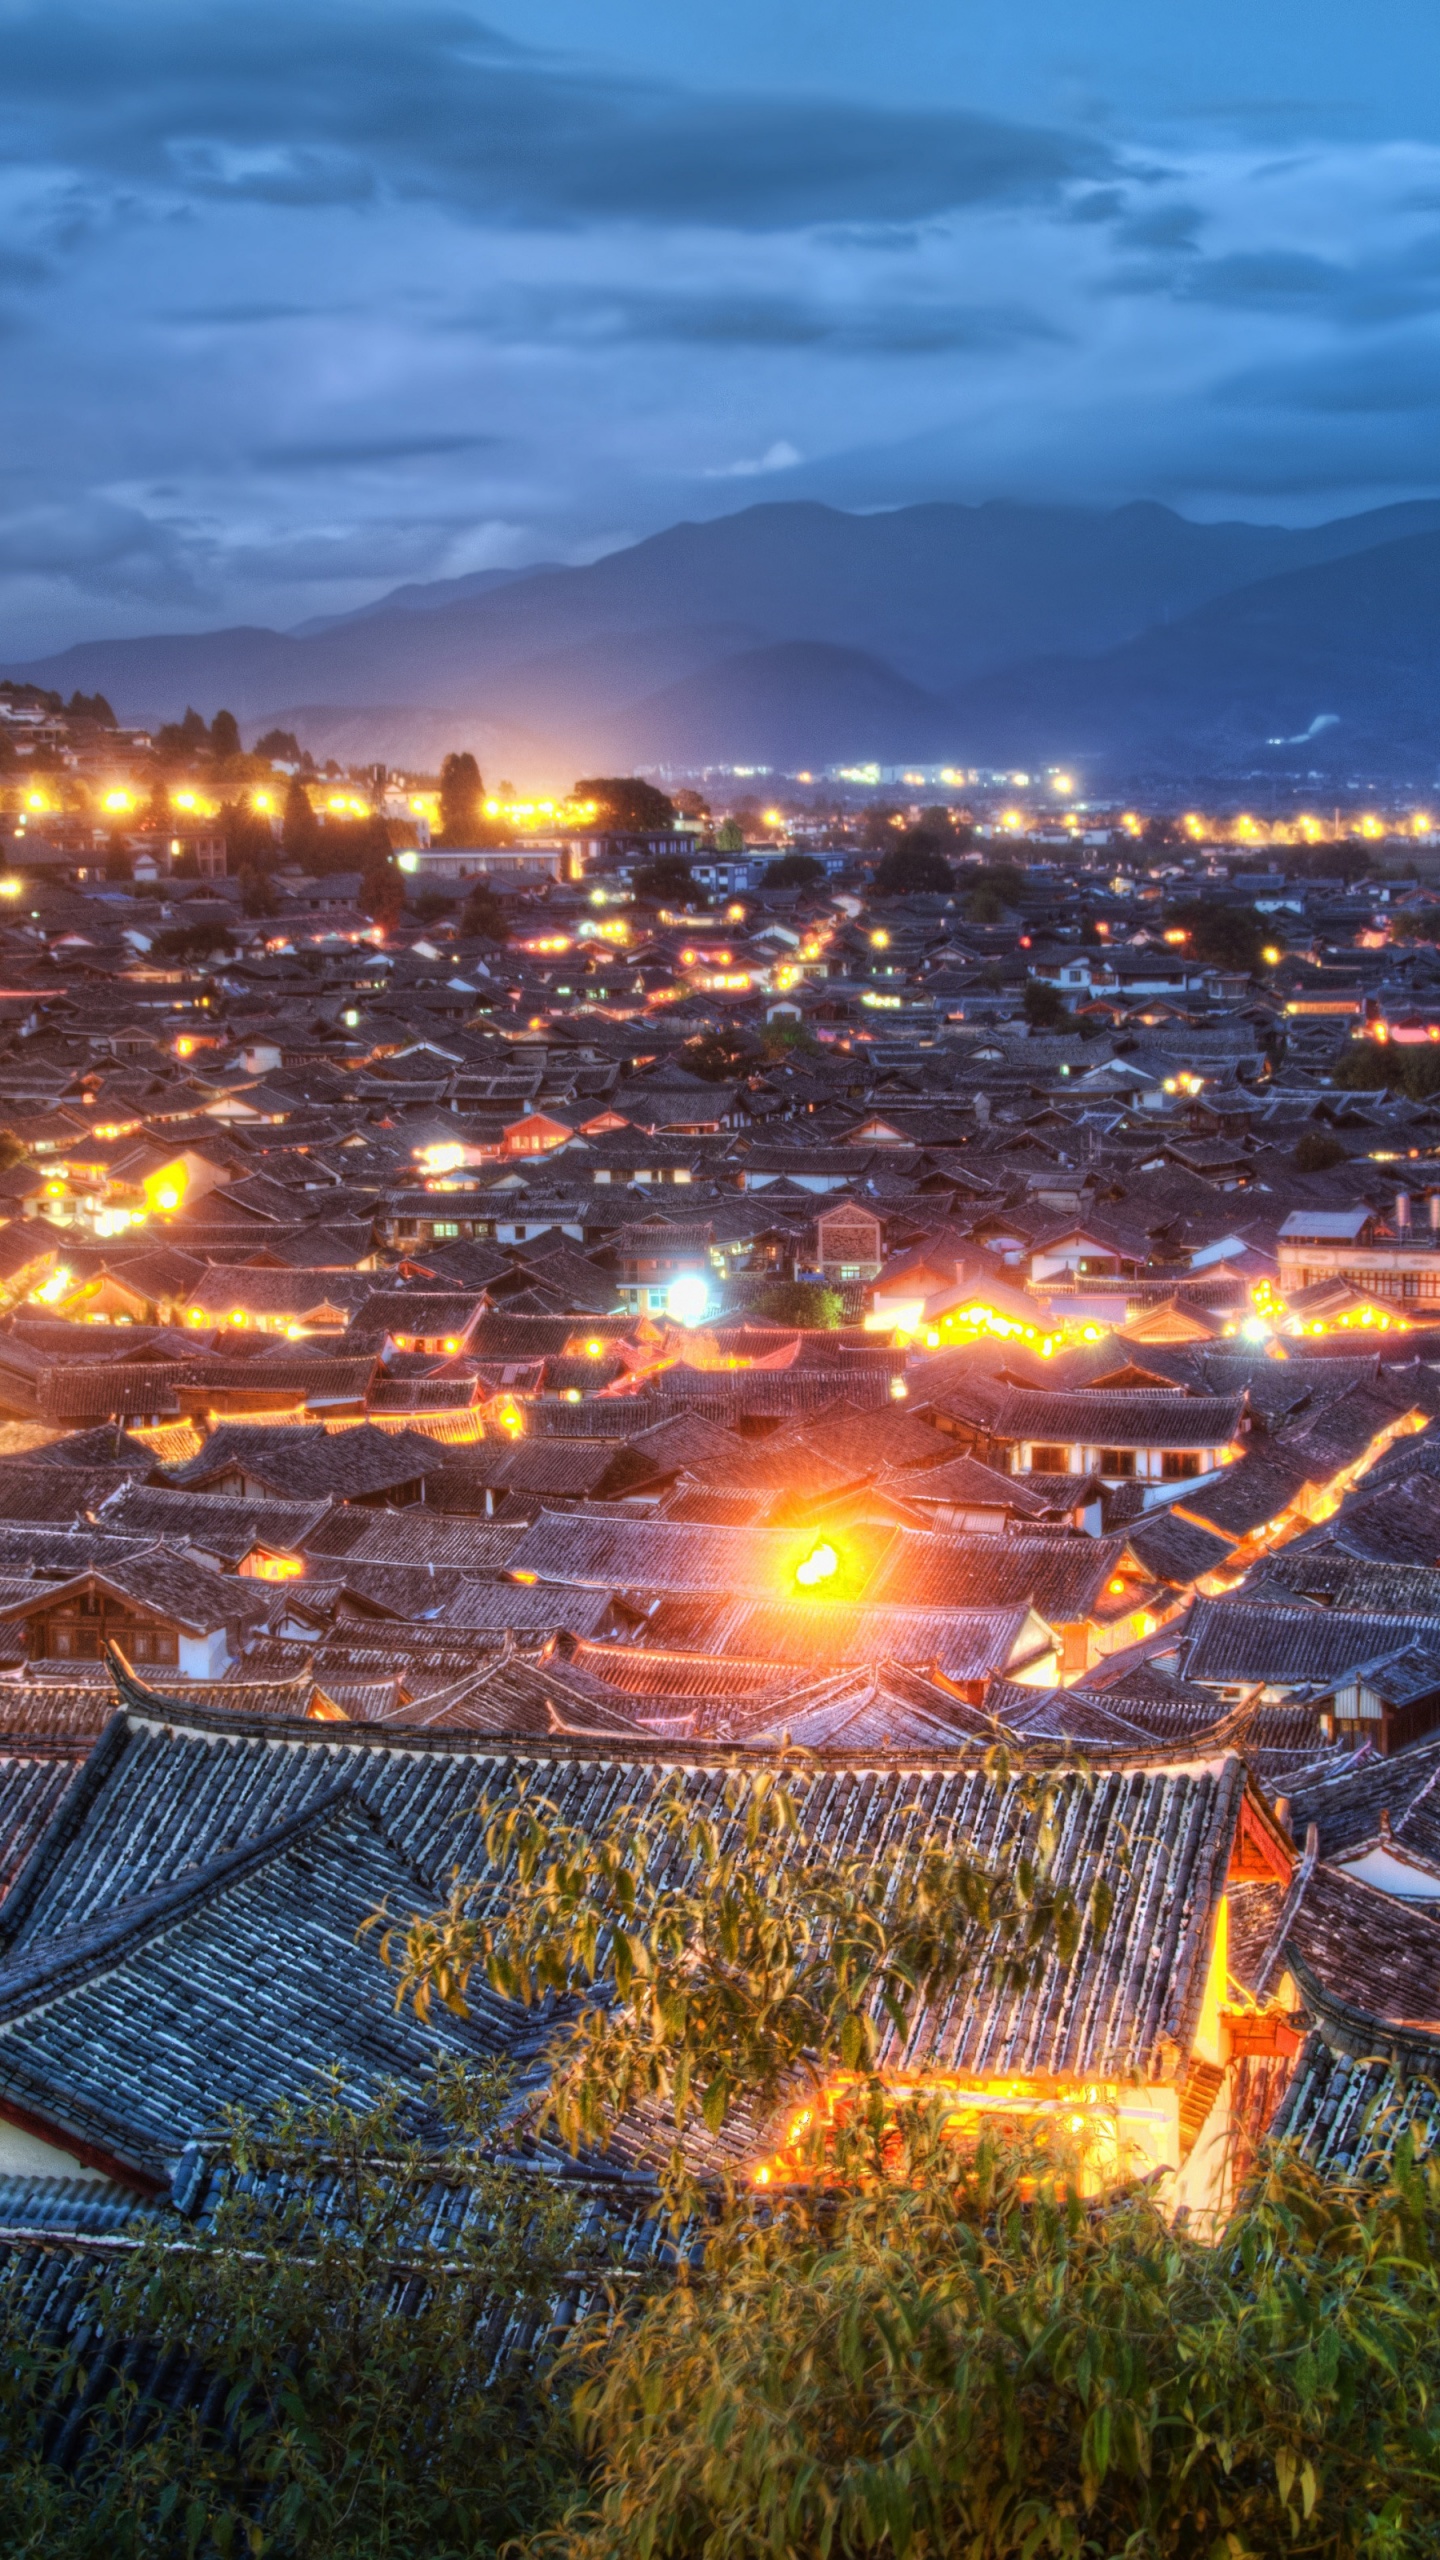 Old Town Of Lijiang - China